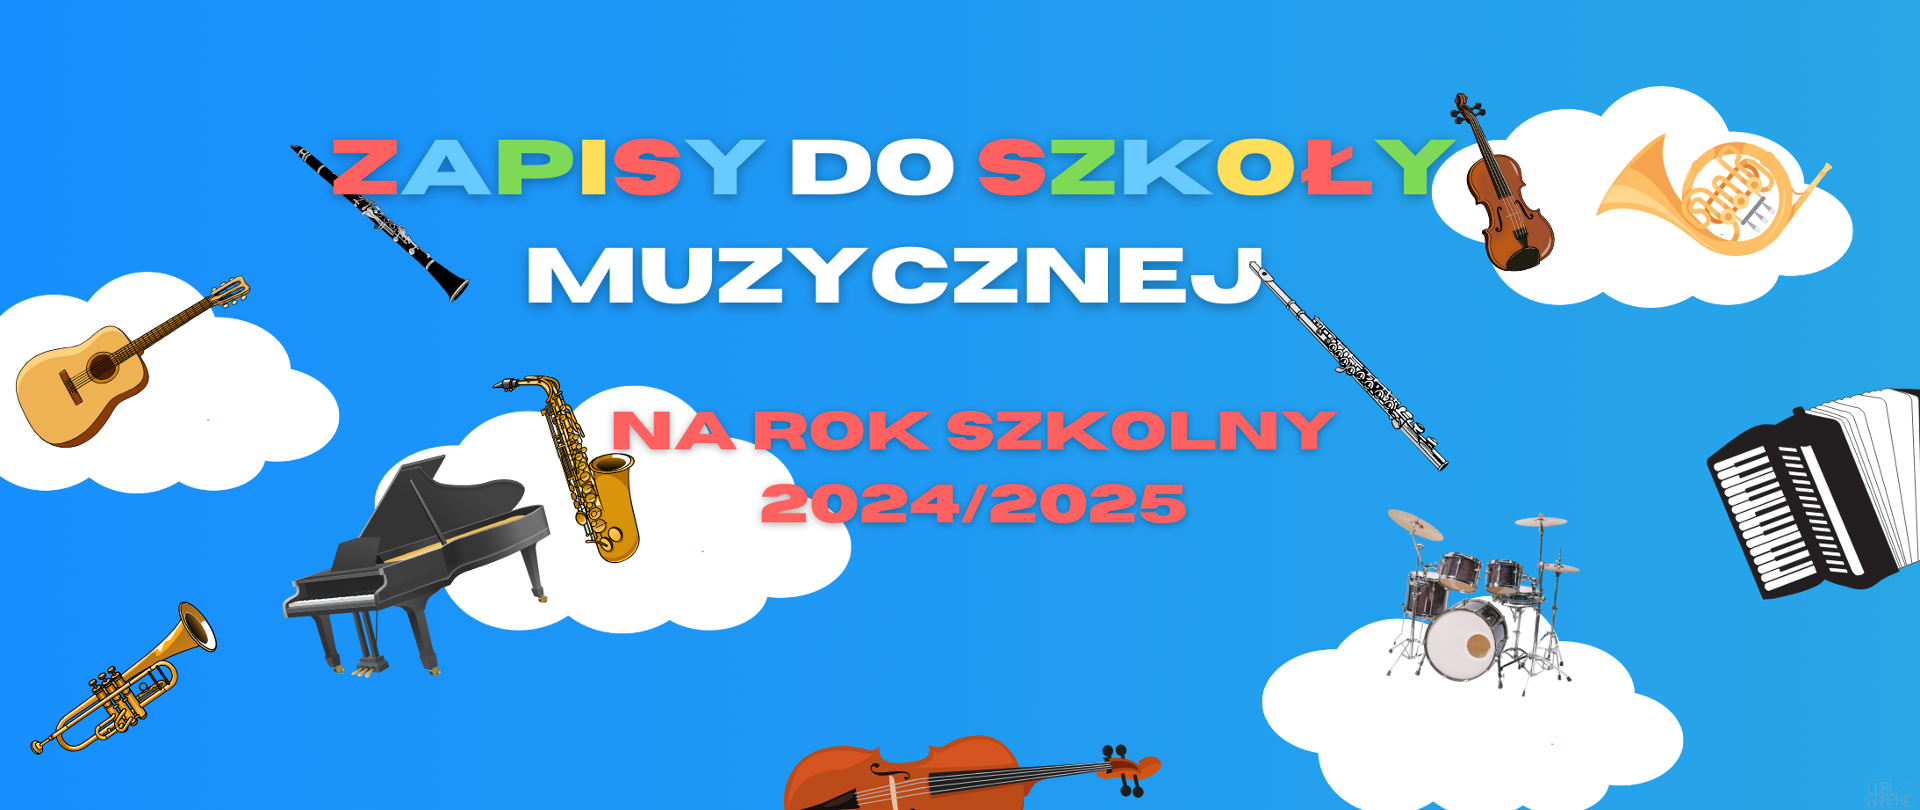 Plakat przedstawia instrumenty na niebieskim tle oraz napisy: "Zapisy do szkoły muzycznej na rok szkolny 2023/2024".